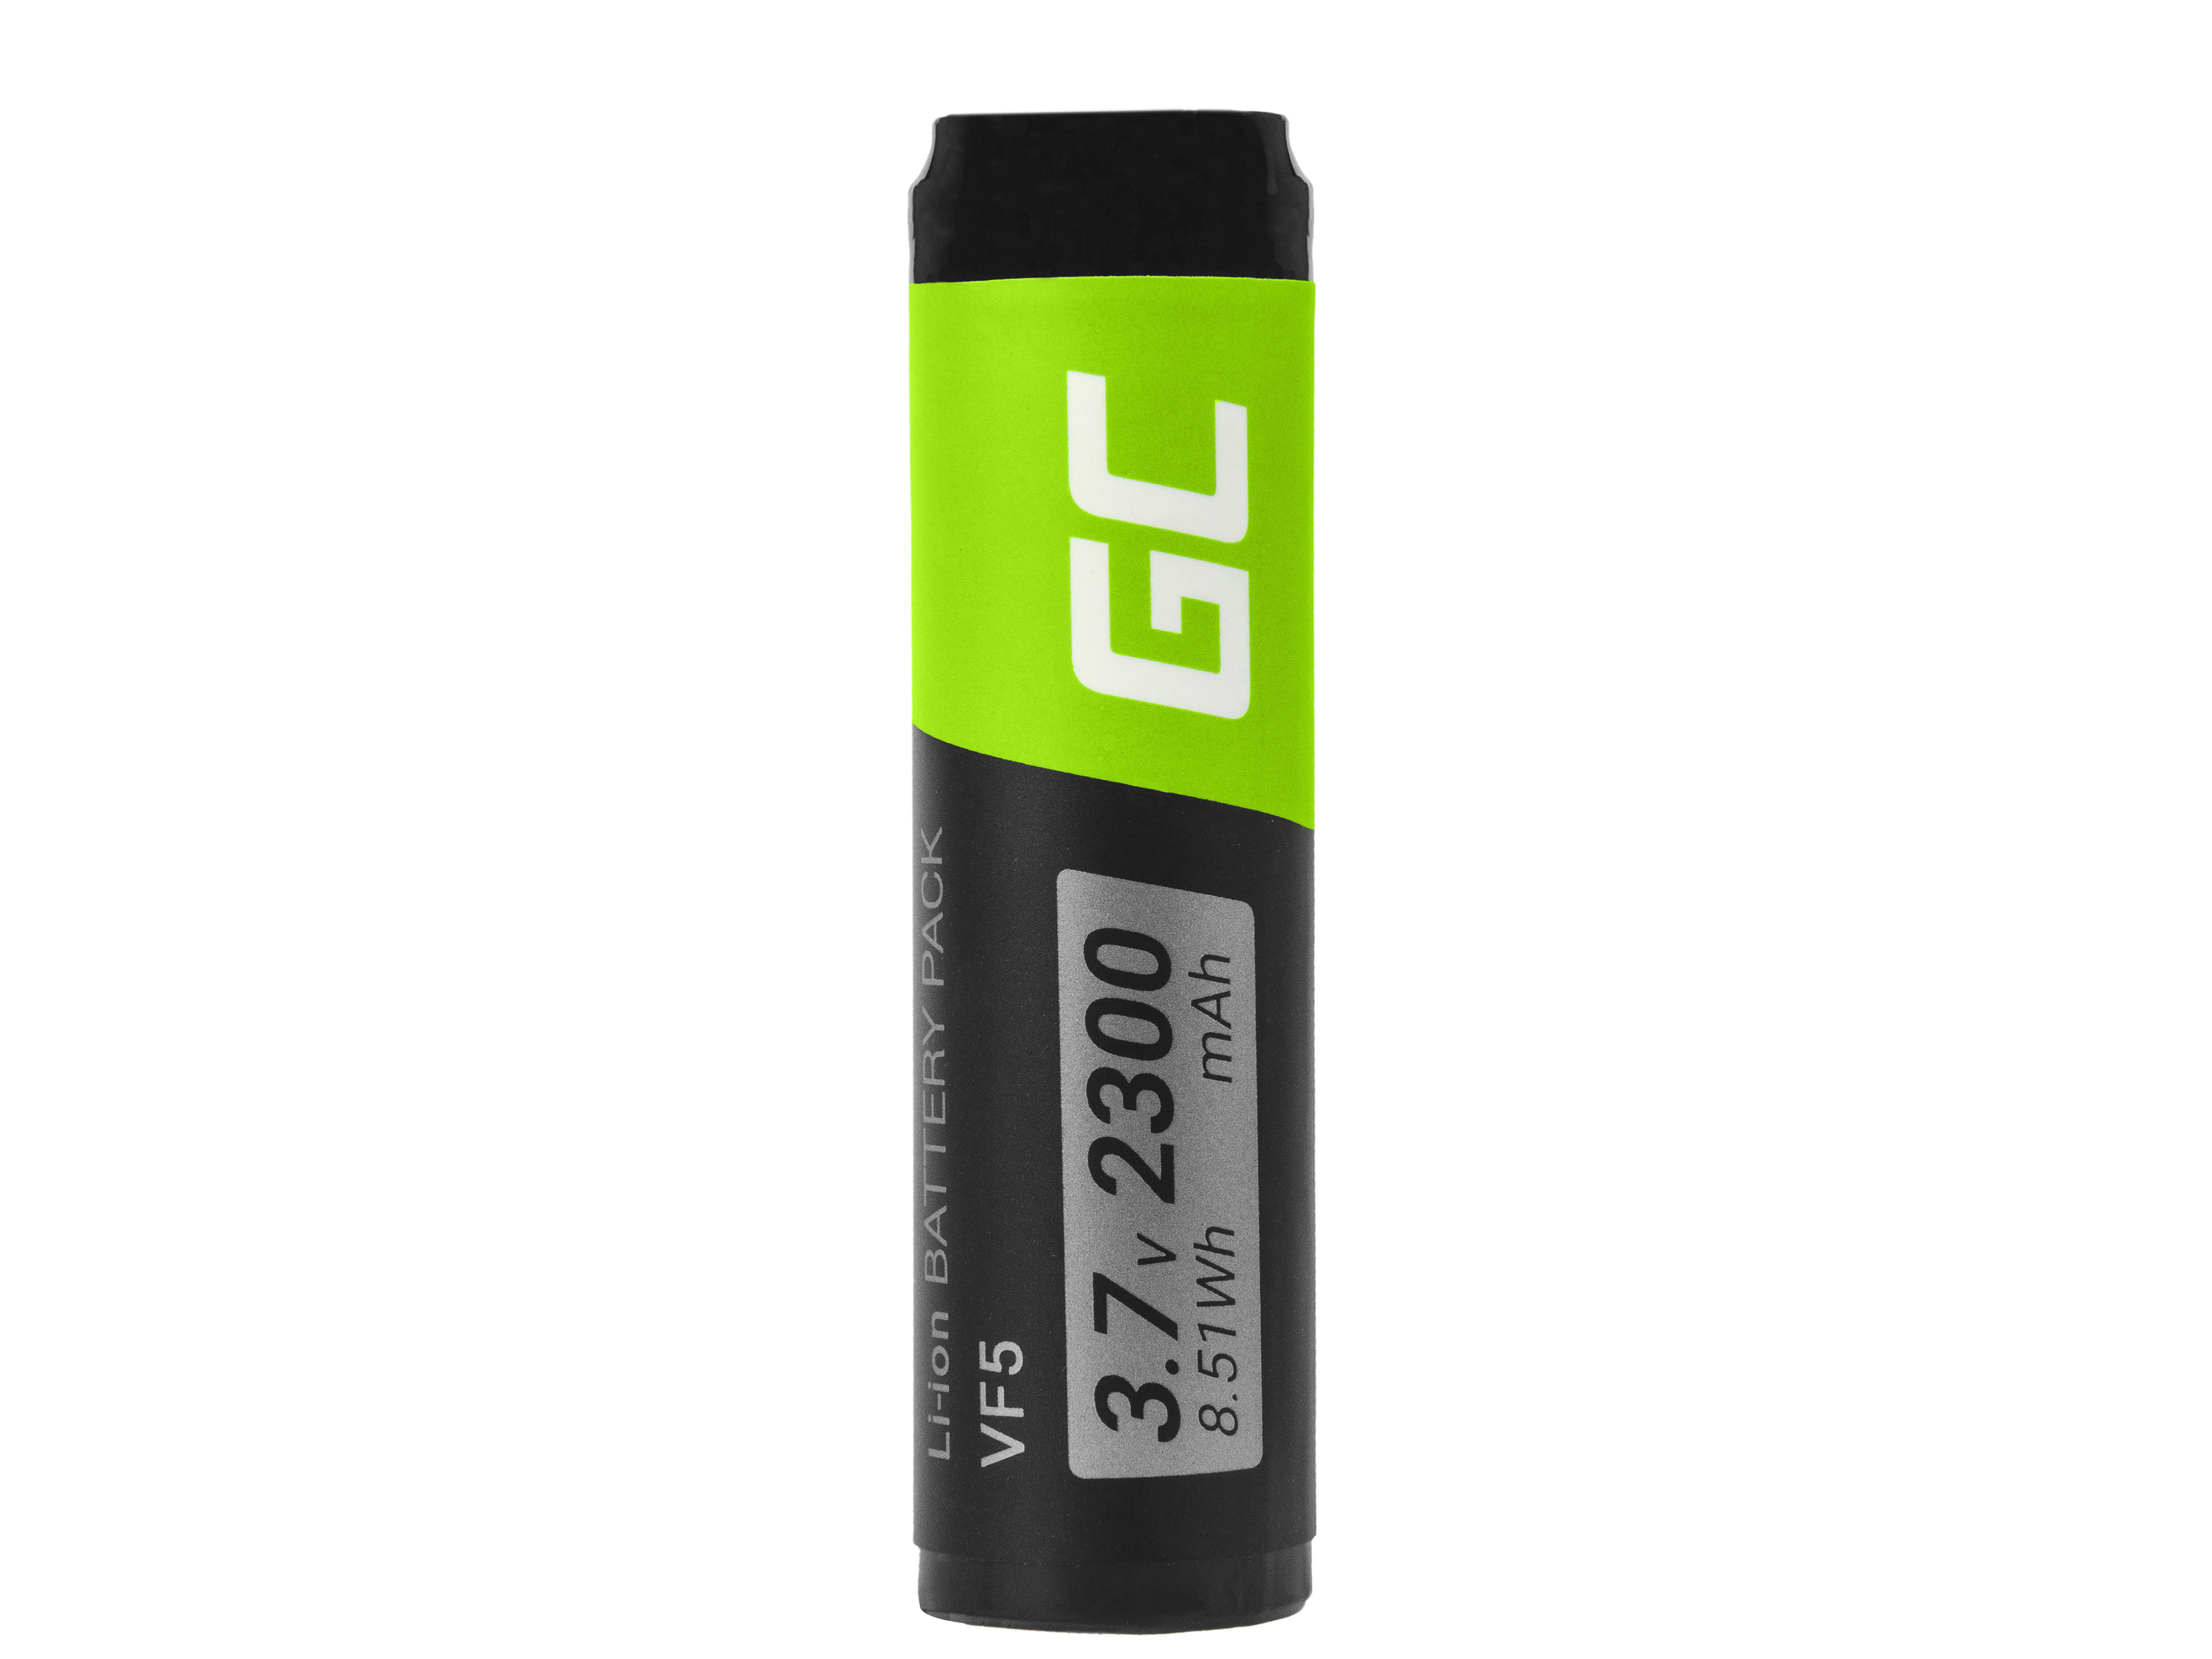 EOL-Green Cell GPS Battery VF5 TomTom Go 300 530 700 910